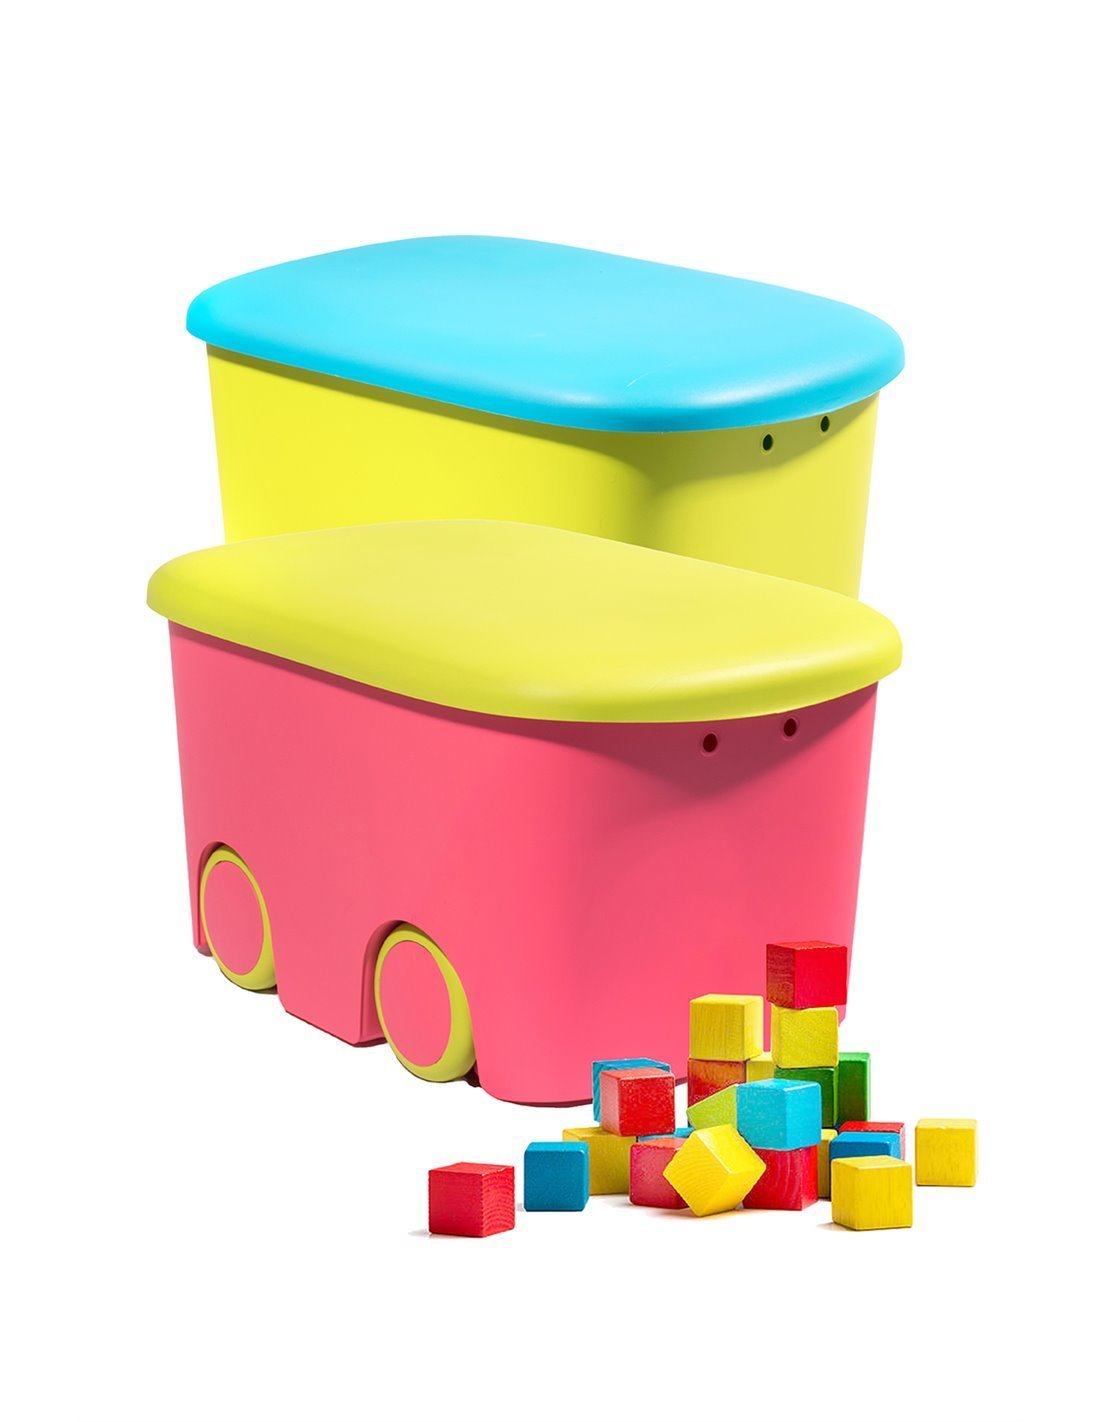 Almacenamiento para niños, Caja de Ordenación Infantil Multiusos Bicolor  con Ruedas